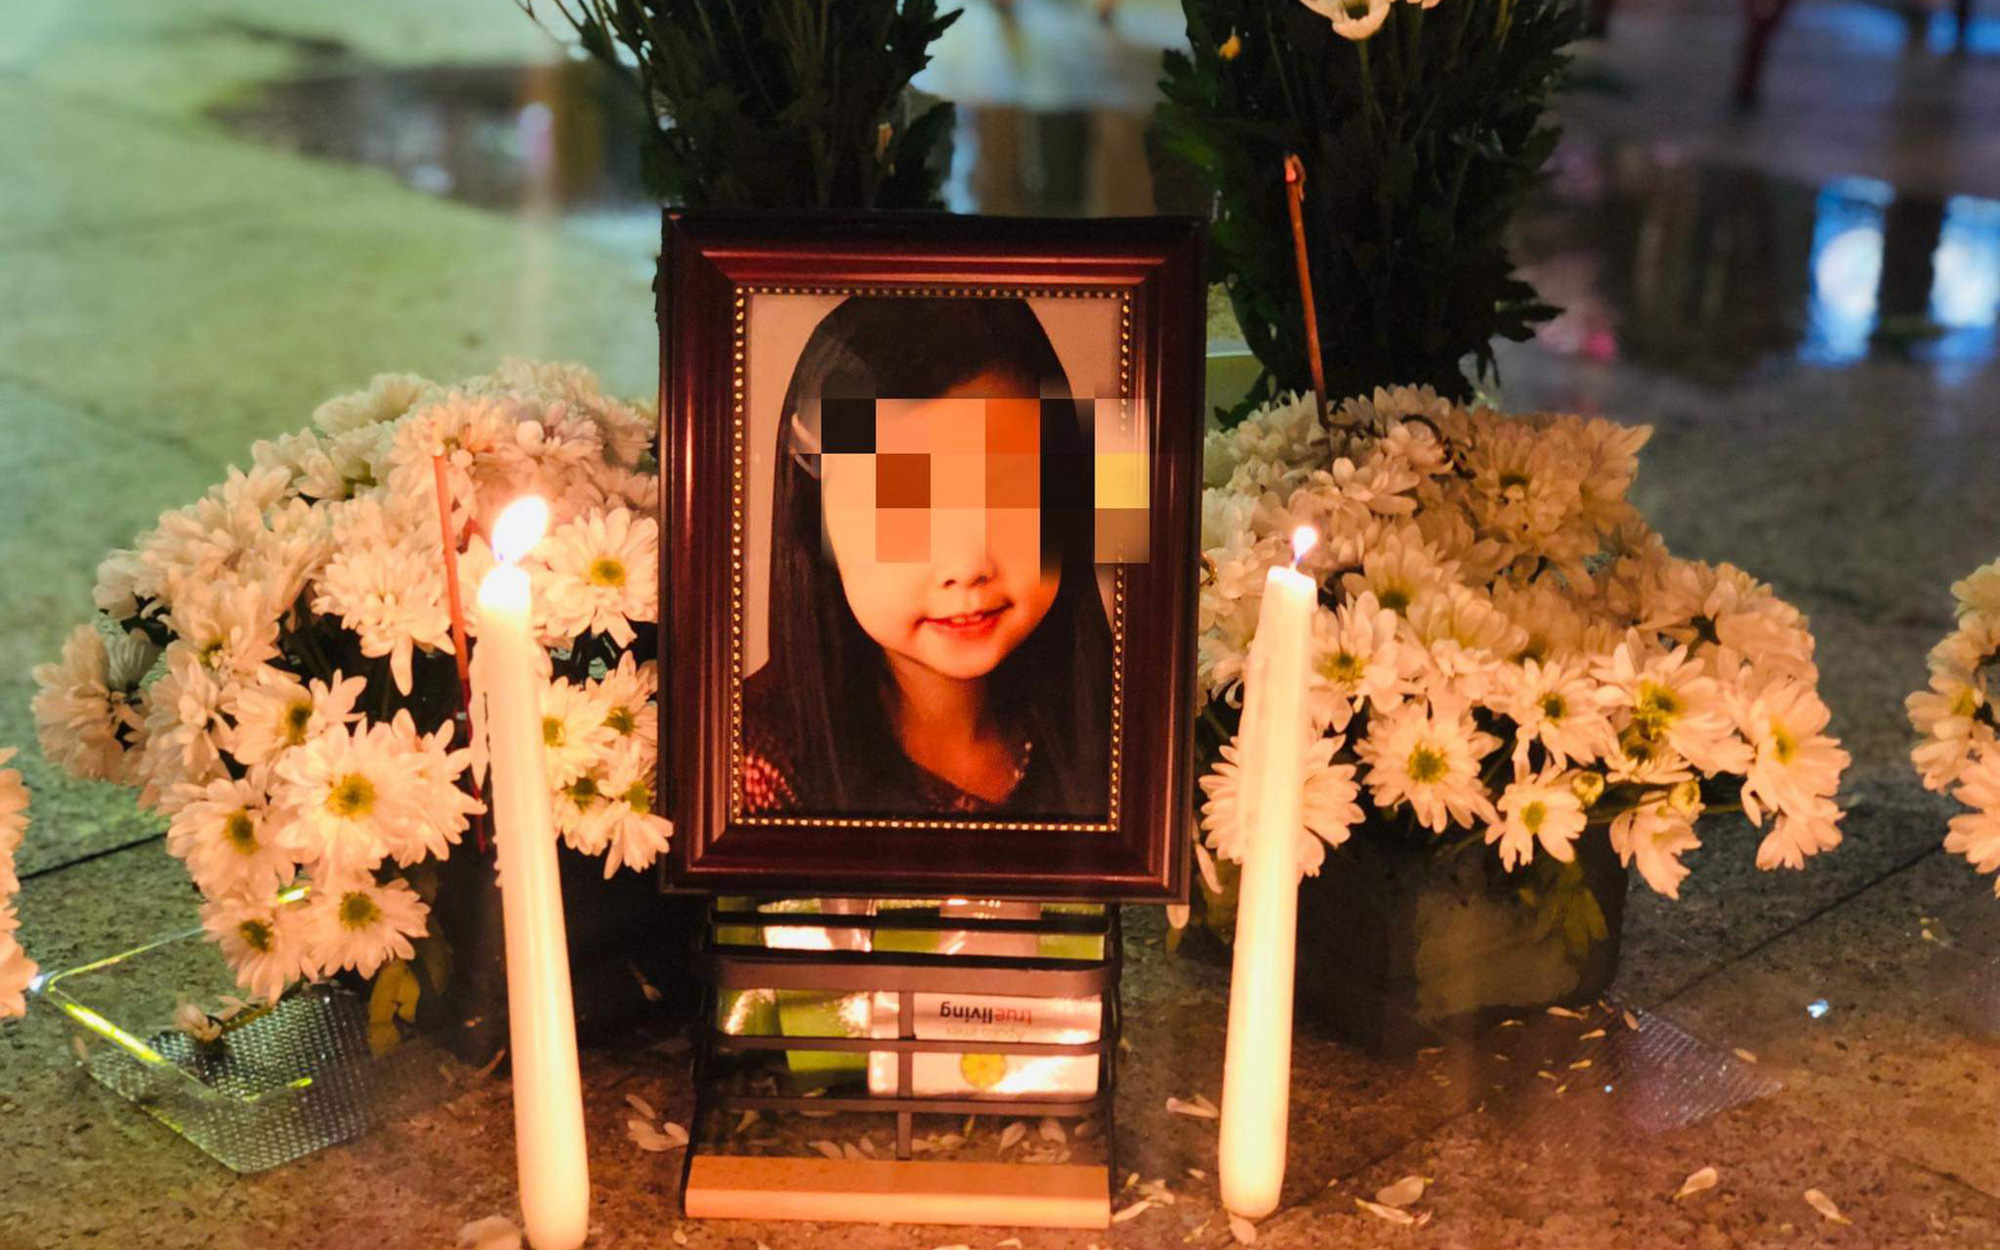 Thông tin mới nhất vụ bé gái 8 tuổi tử vong nghi do bạo hành: Đã có kết luận nguyên nhân cái chết